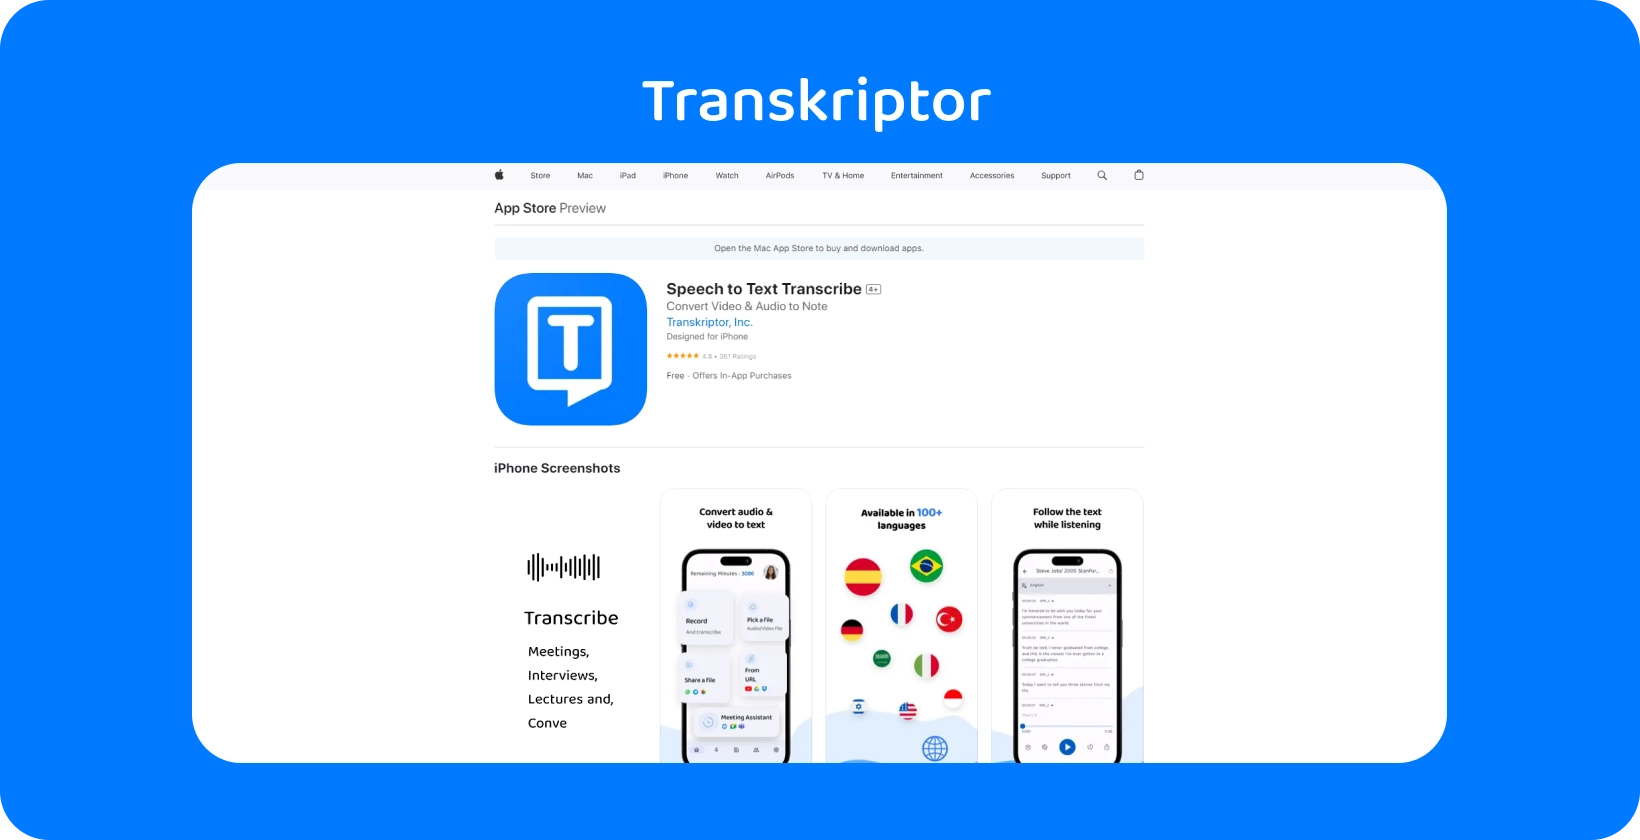 Transkriptor एप्लिकेशन iPhone पर प्रदर्शित किया गया, जिसमें इसकी भाषण-से-पाठ प्रतिलेखन क्षमताओं पर प्रकाश डाला गया।